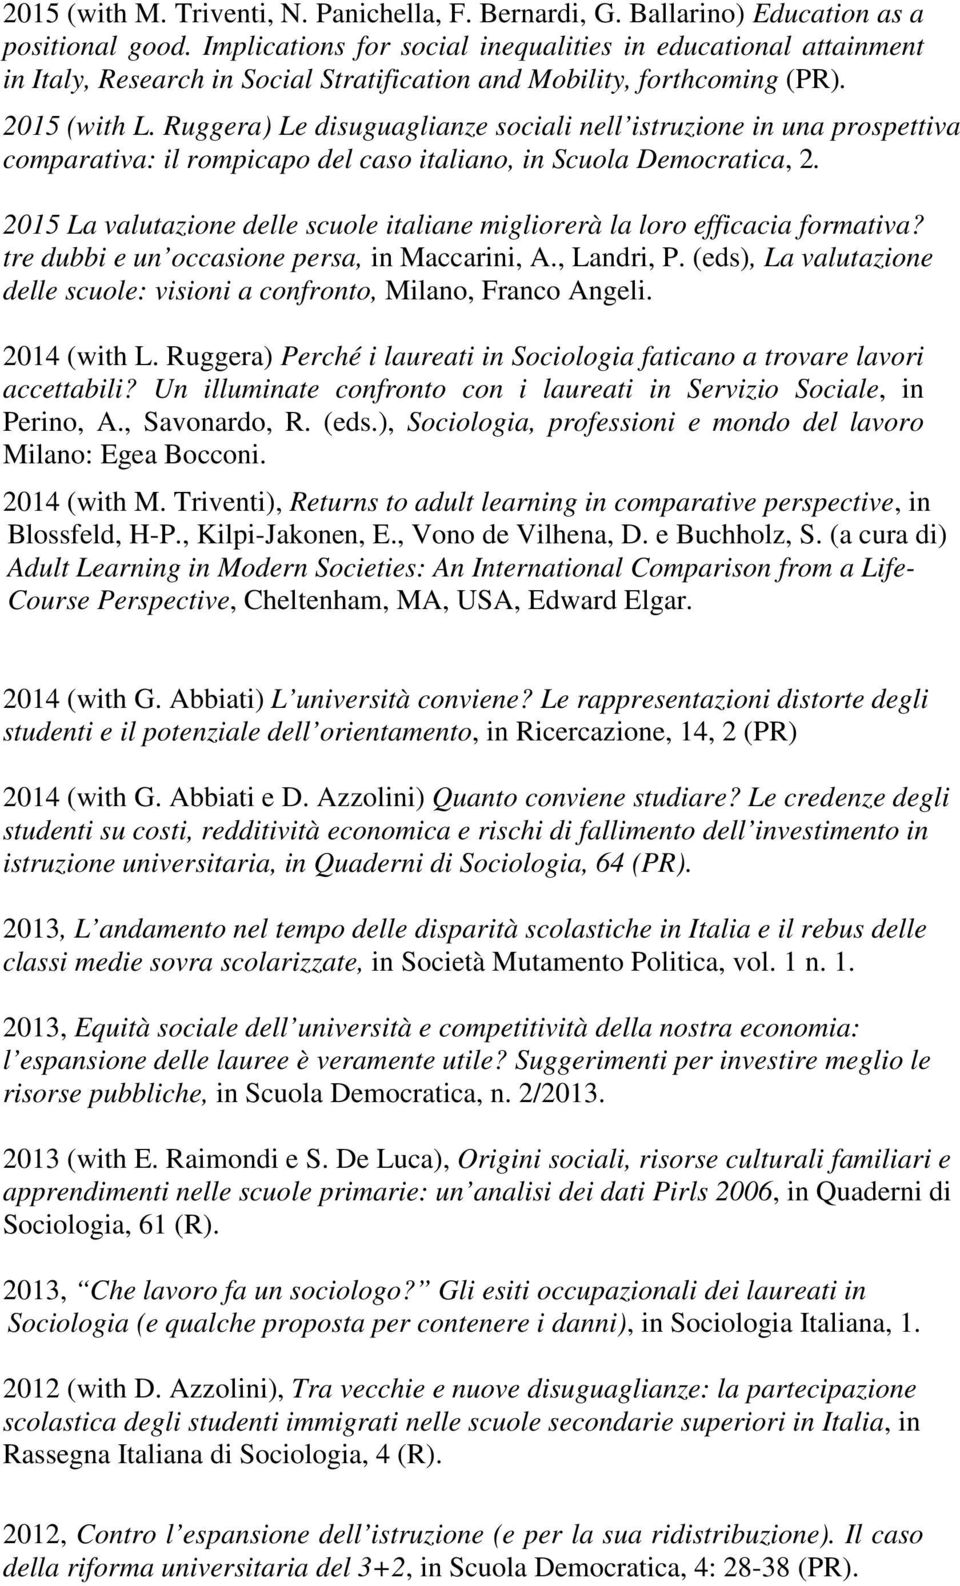 Ruggera) Le disuguaglianze sociali nell istruzione in una prospettiva comparativa: il rompicapo del caso italiano, in Scuola Democratica, 2.